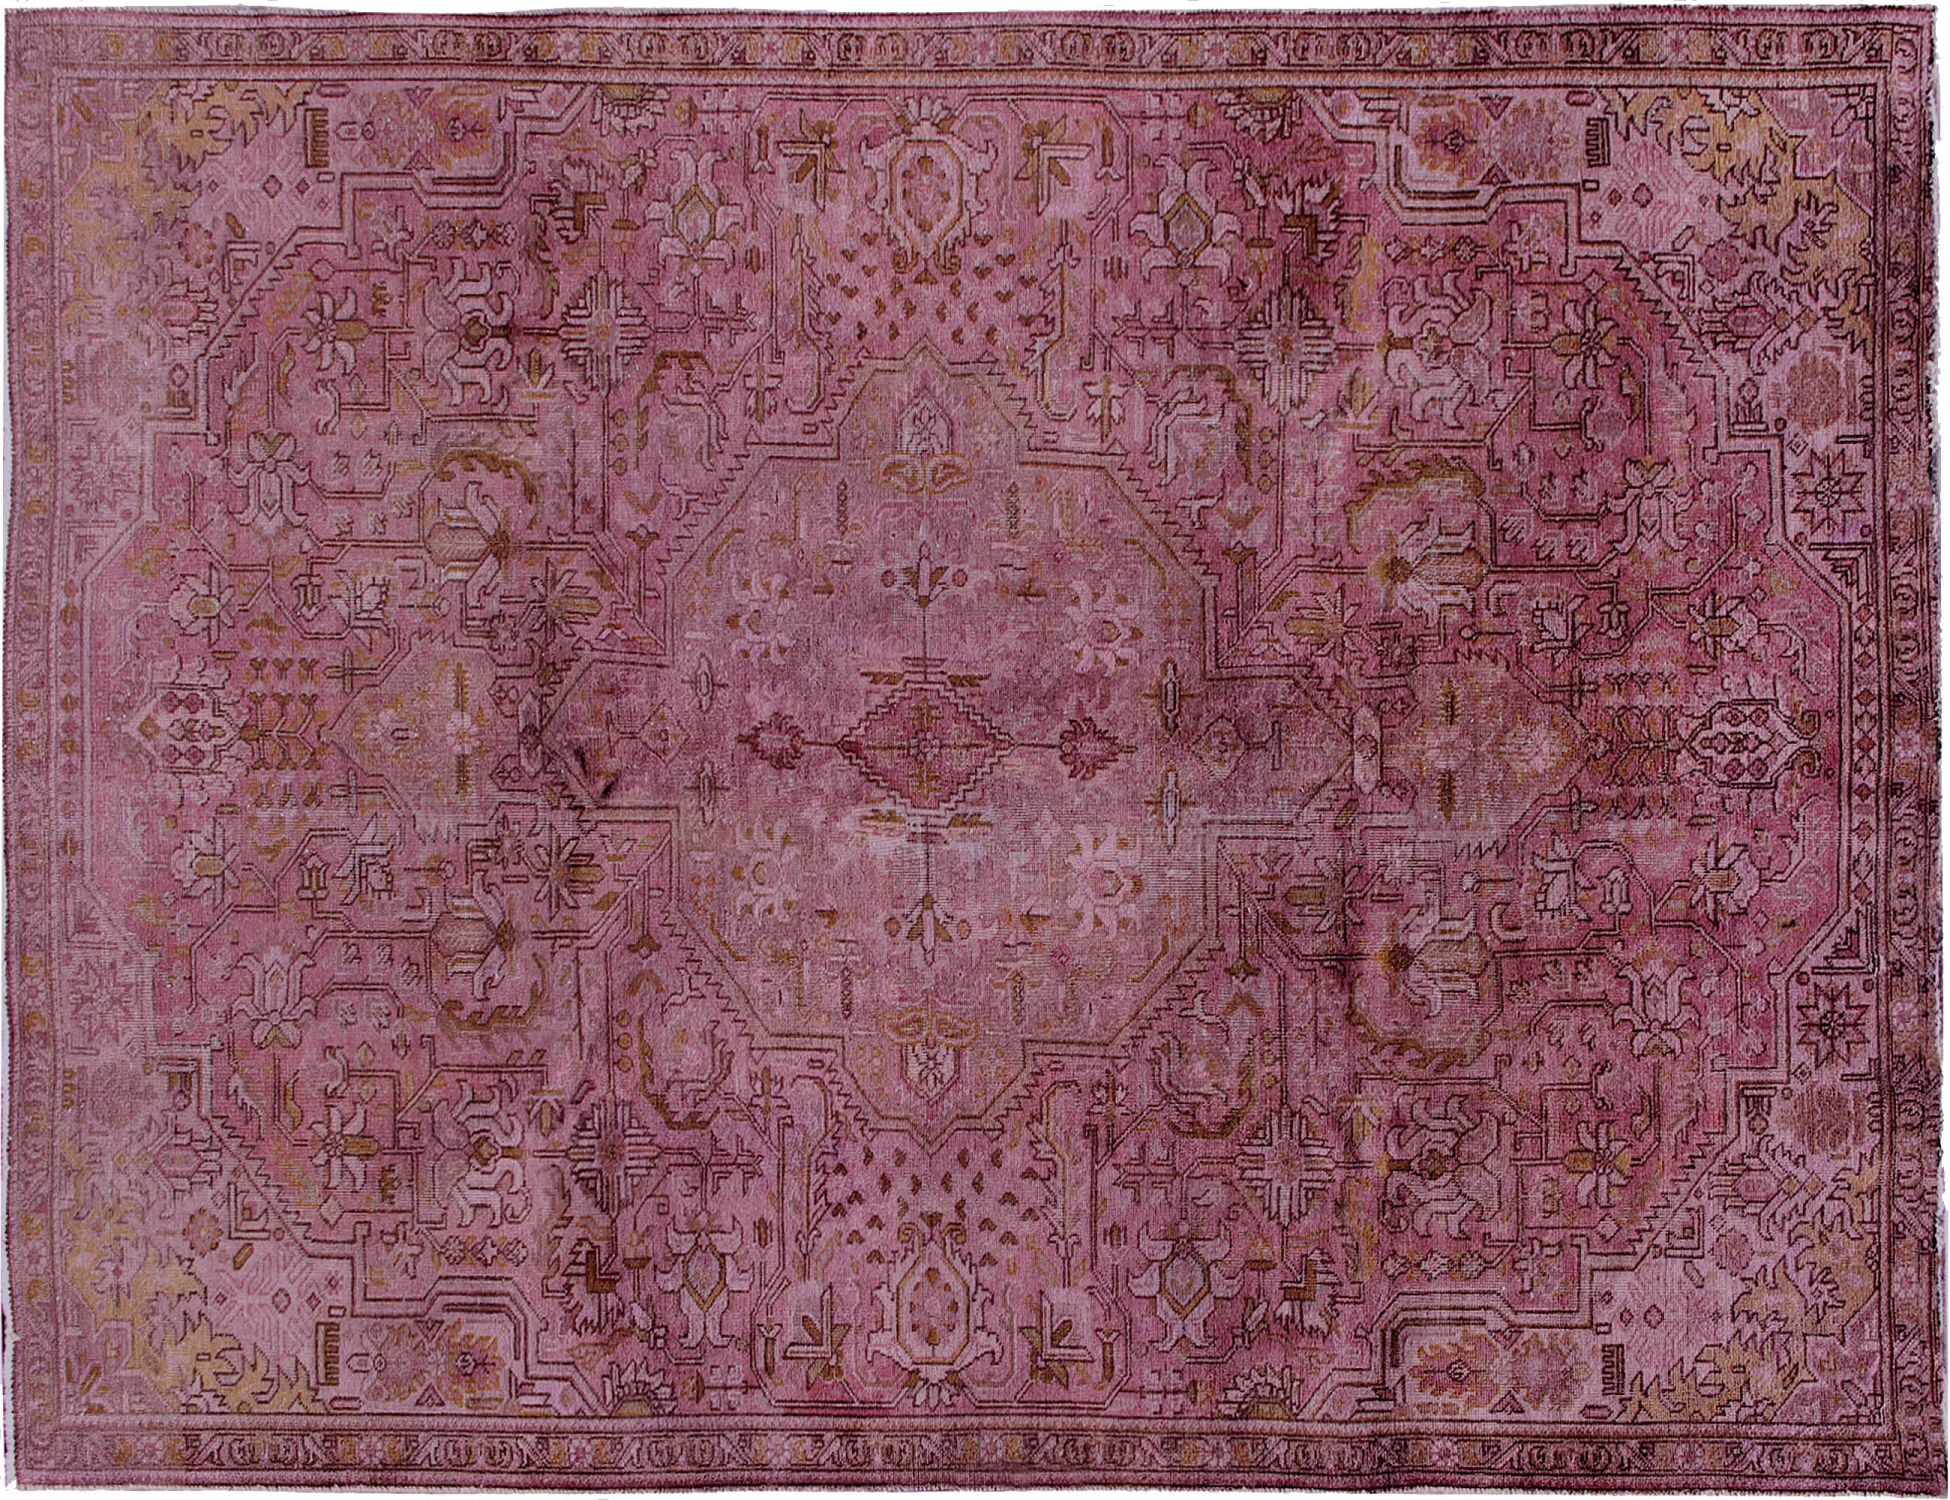 Persischer Vintage Teppich  lila <br/>324 x 217 cm